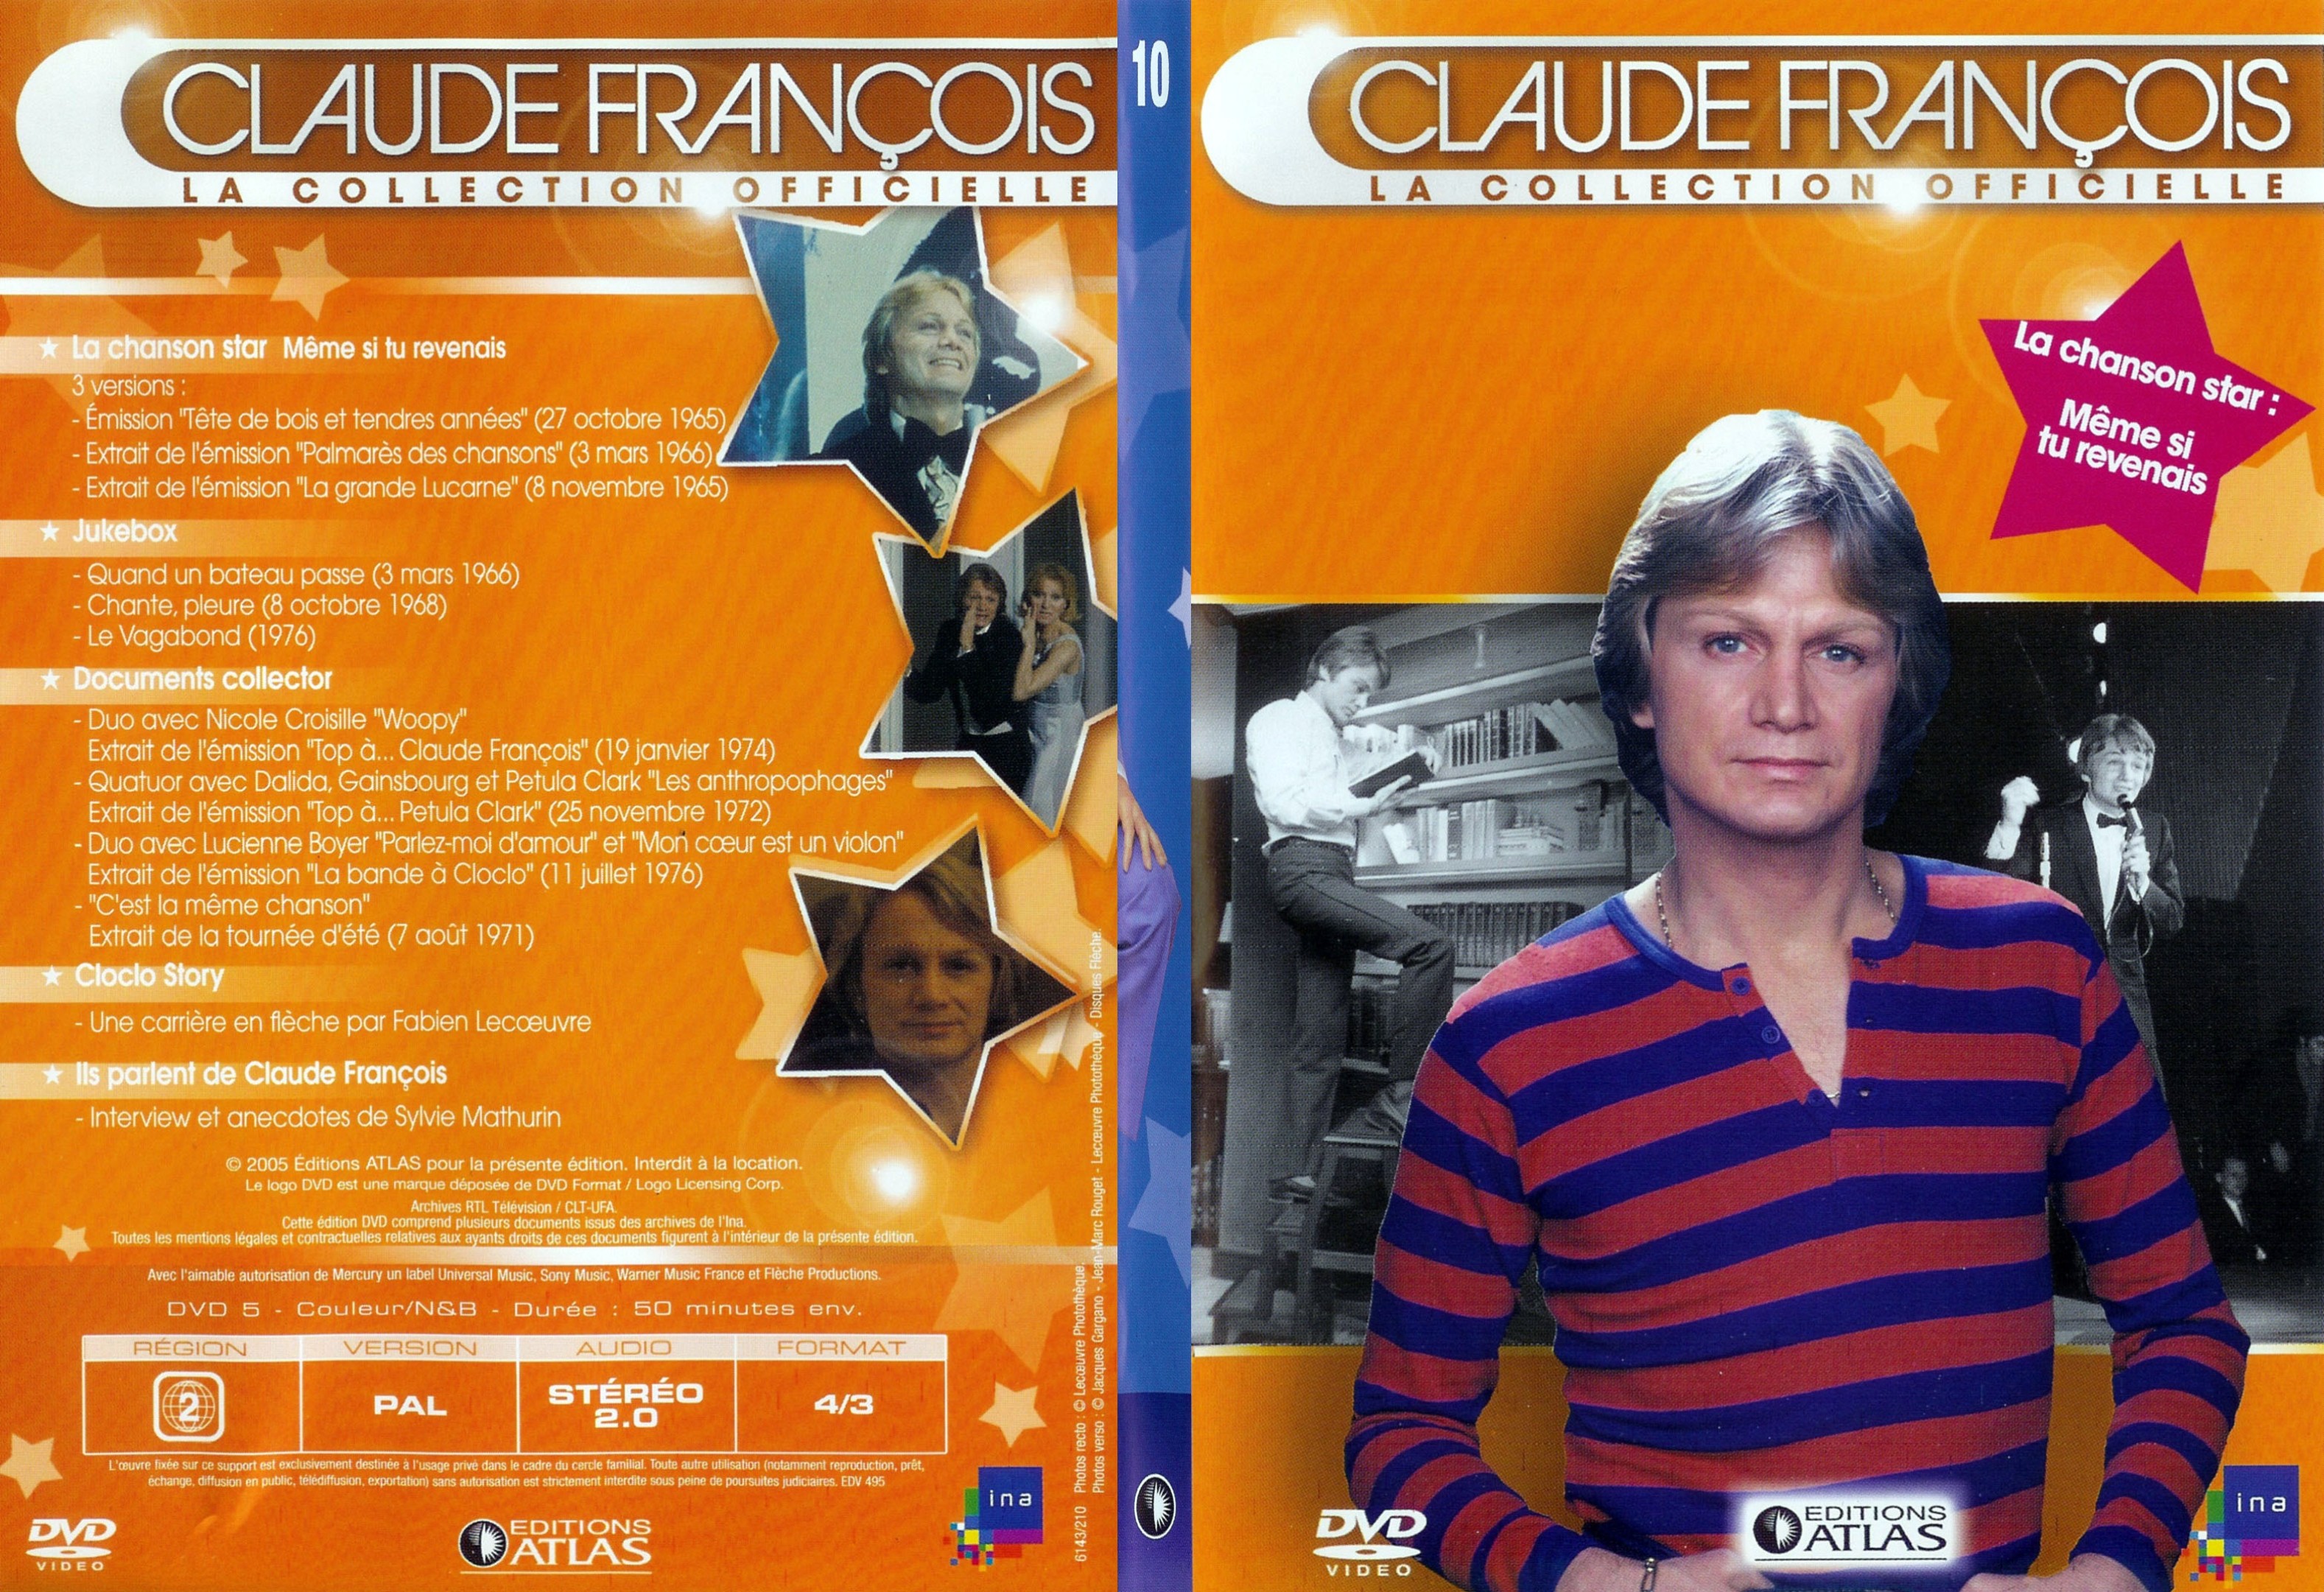 Jaquette DVD Claude francois le collection officielle vol 10 - SLIM